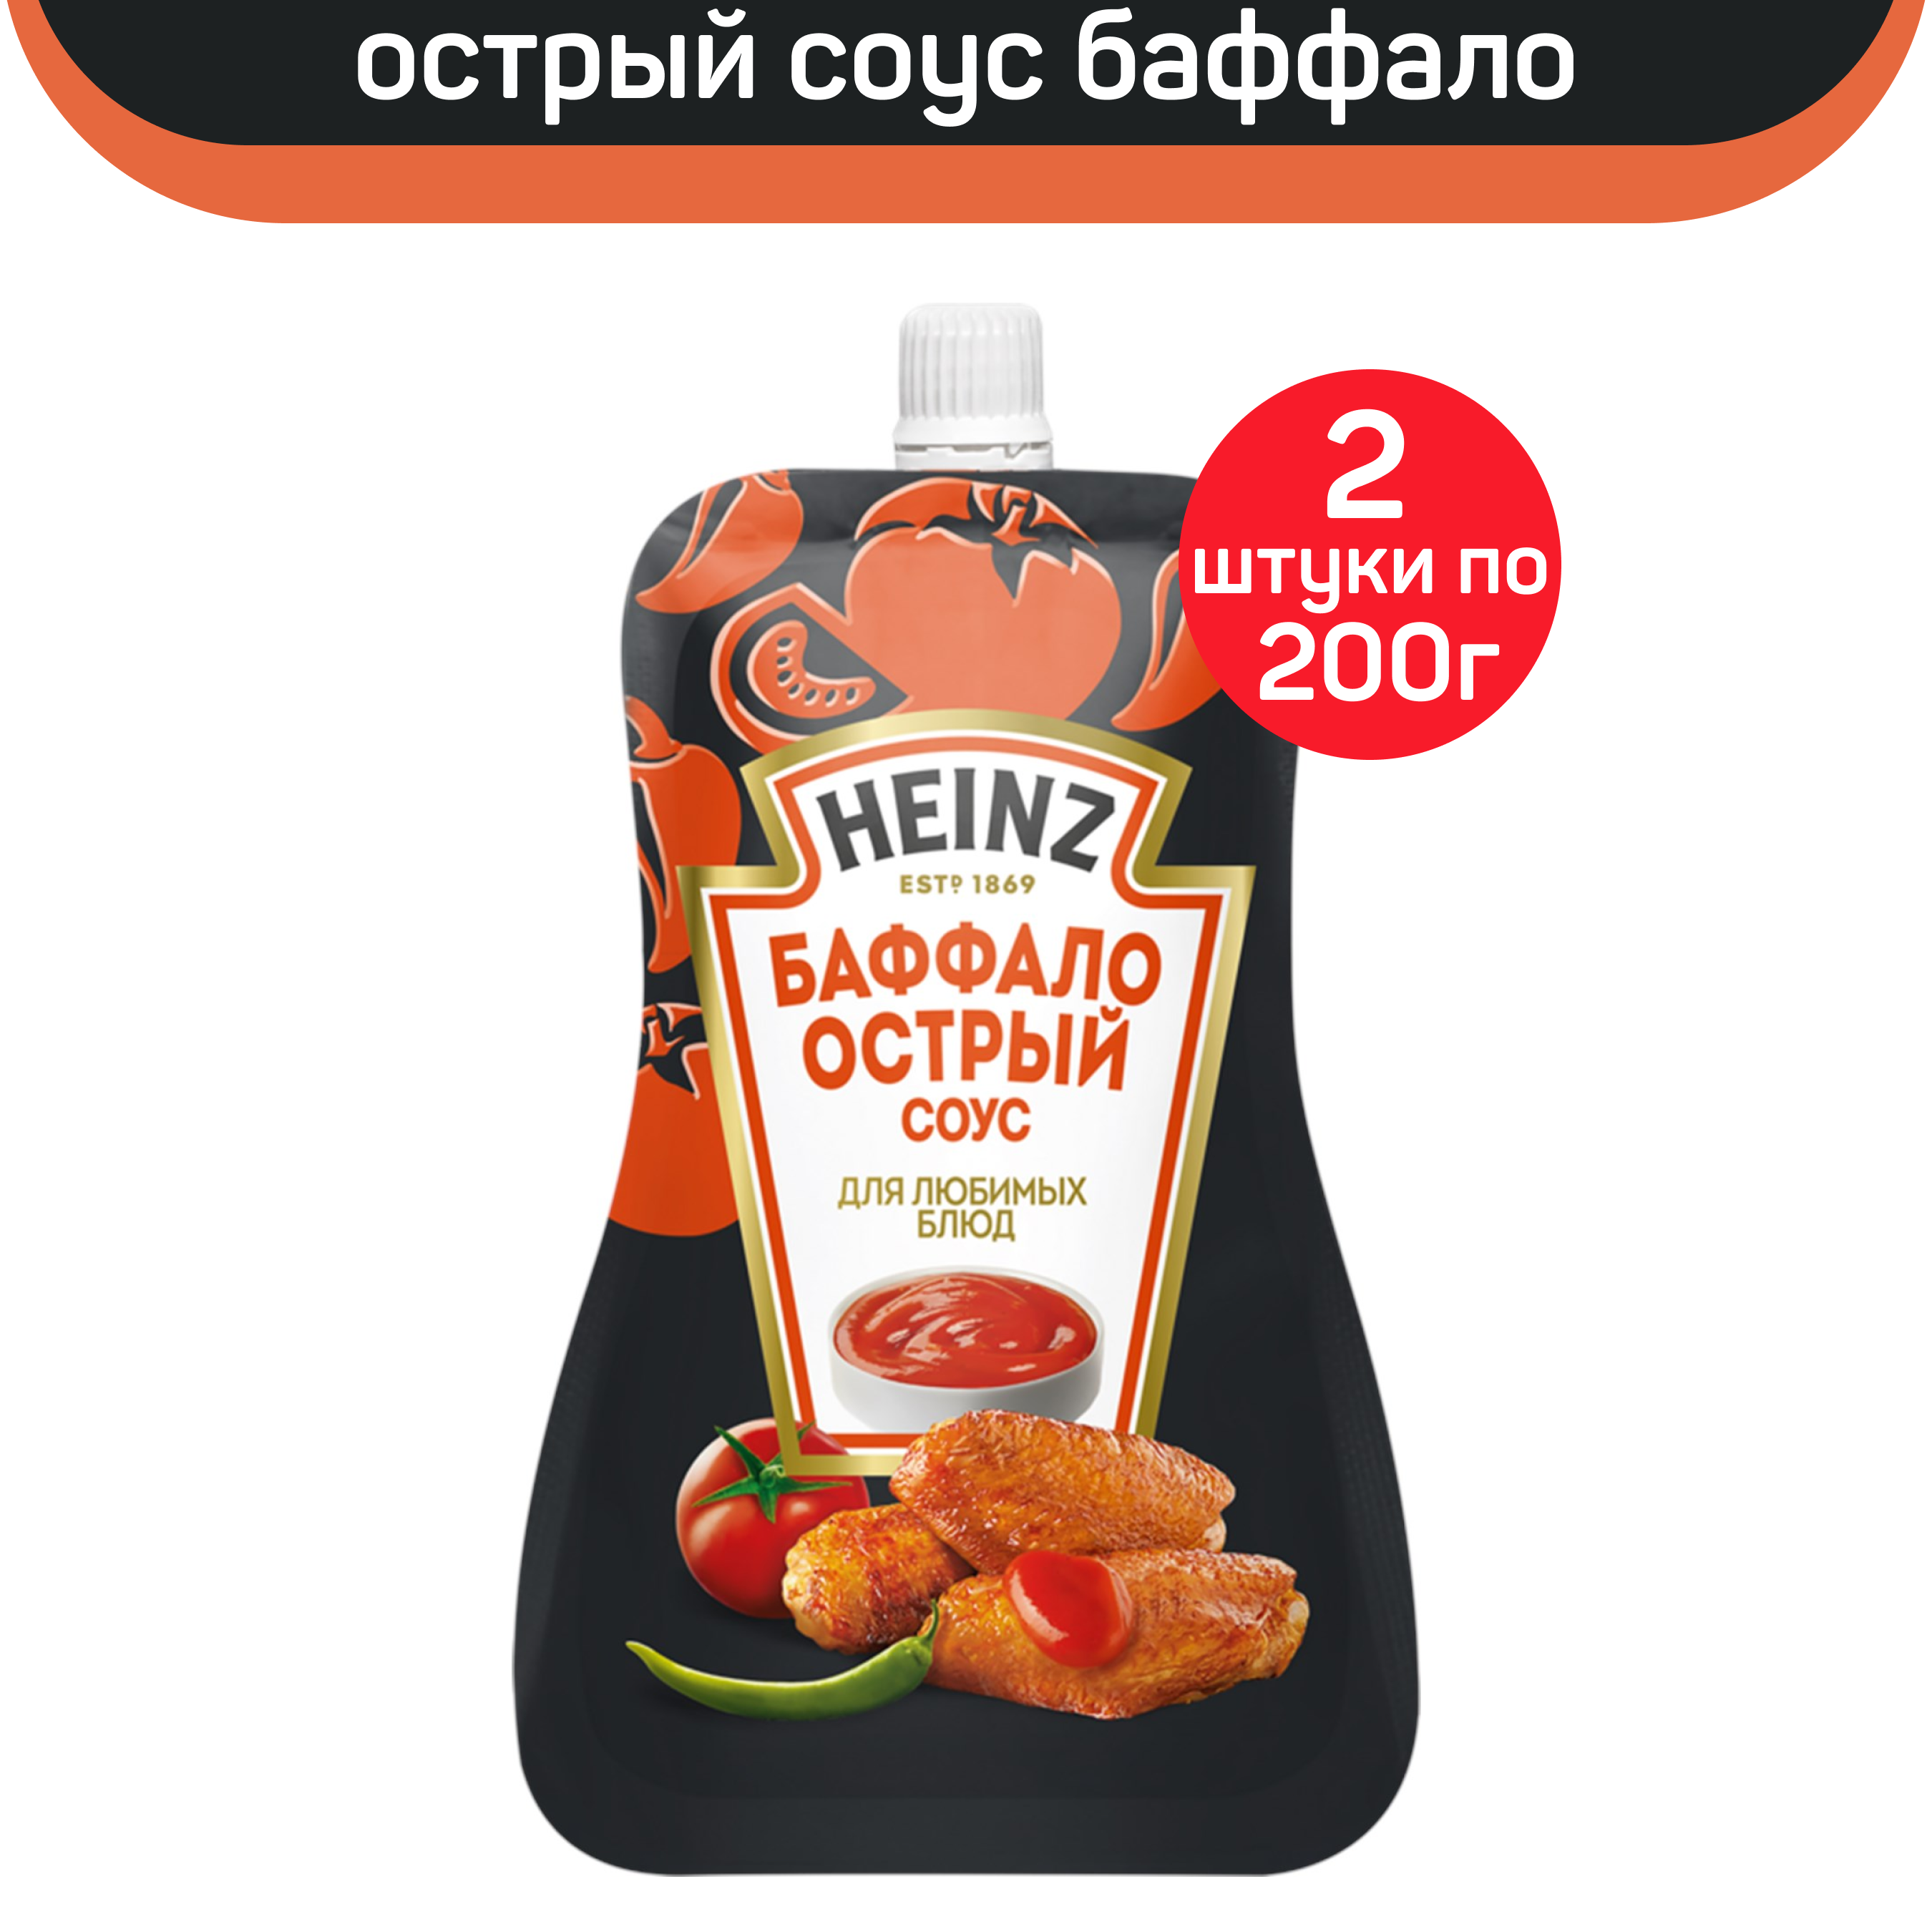 Соус Heinz острый Баффало, 2 шт по 200 г